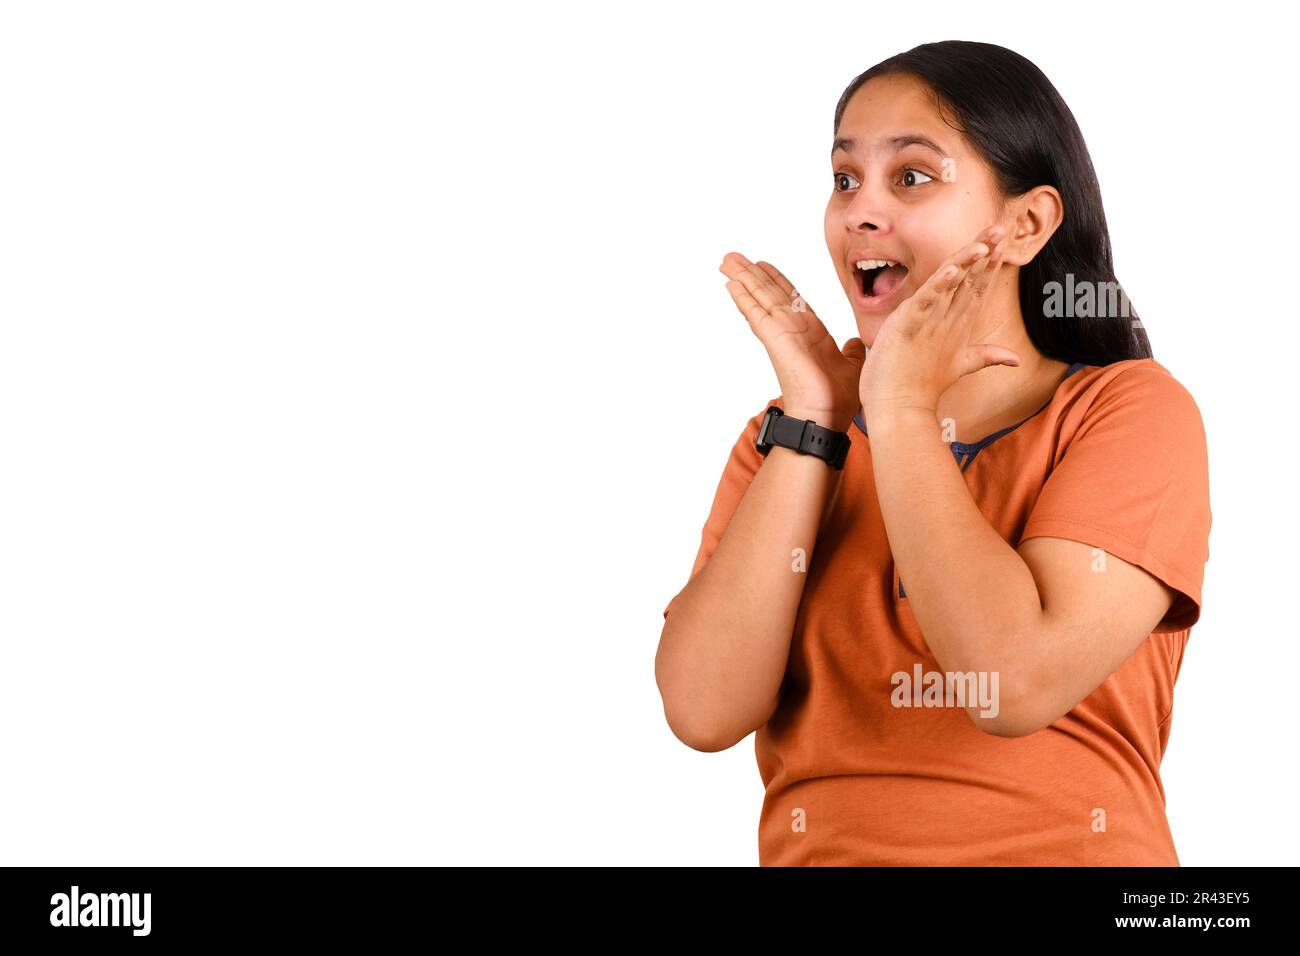 Bild einer aufgeregten jungen Indianerin, die isoliert auf weißem Hintergrund steht, mit Copy Space. Ich sehe in die Kamera. Stockfoto